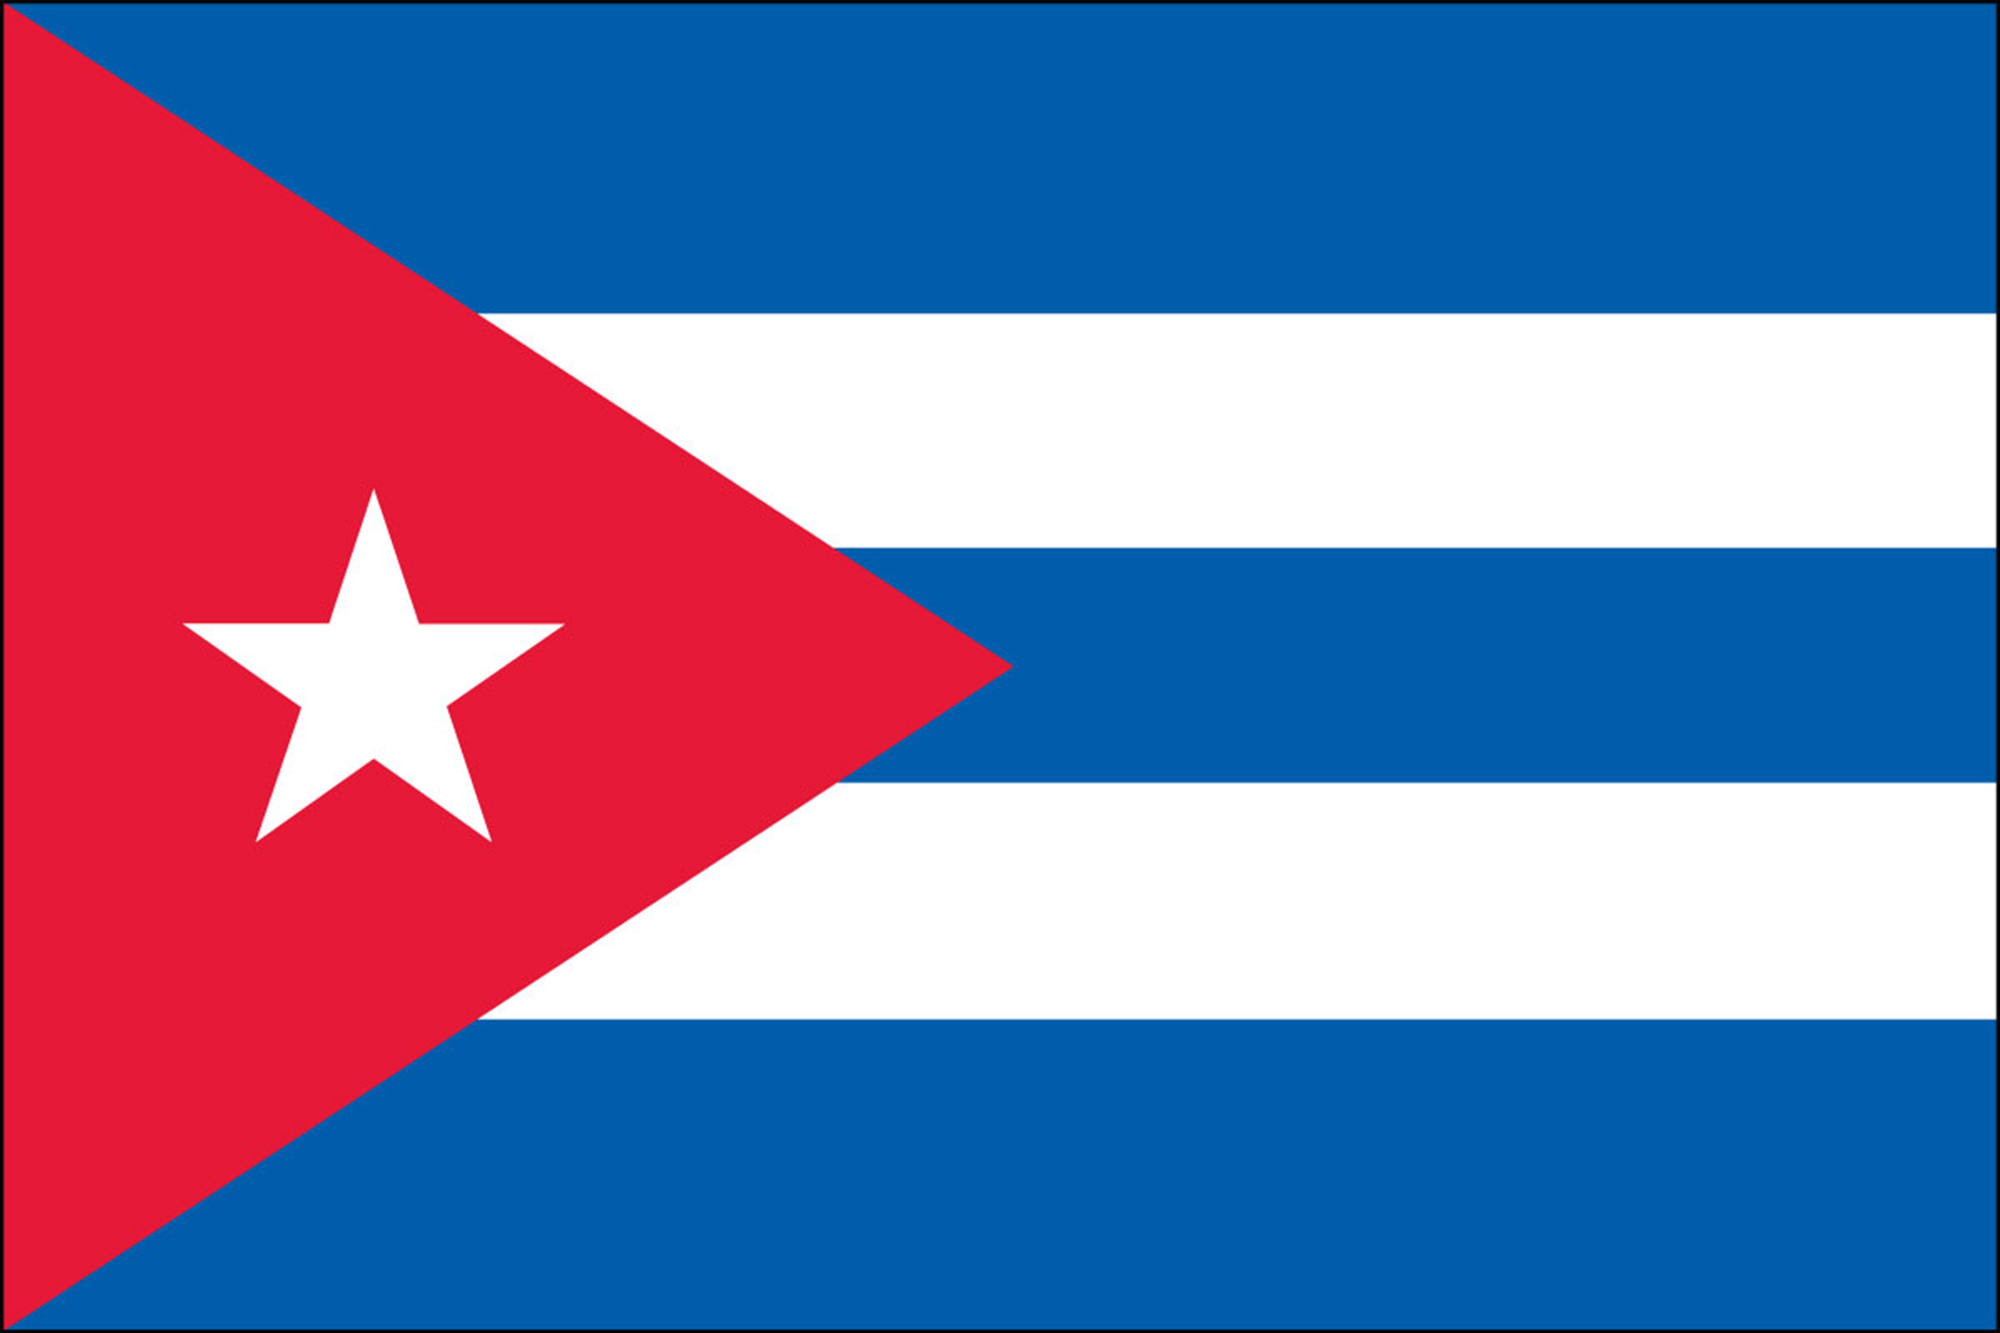 Cuba Flags